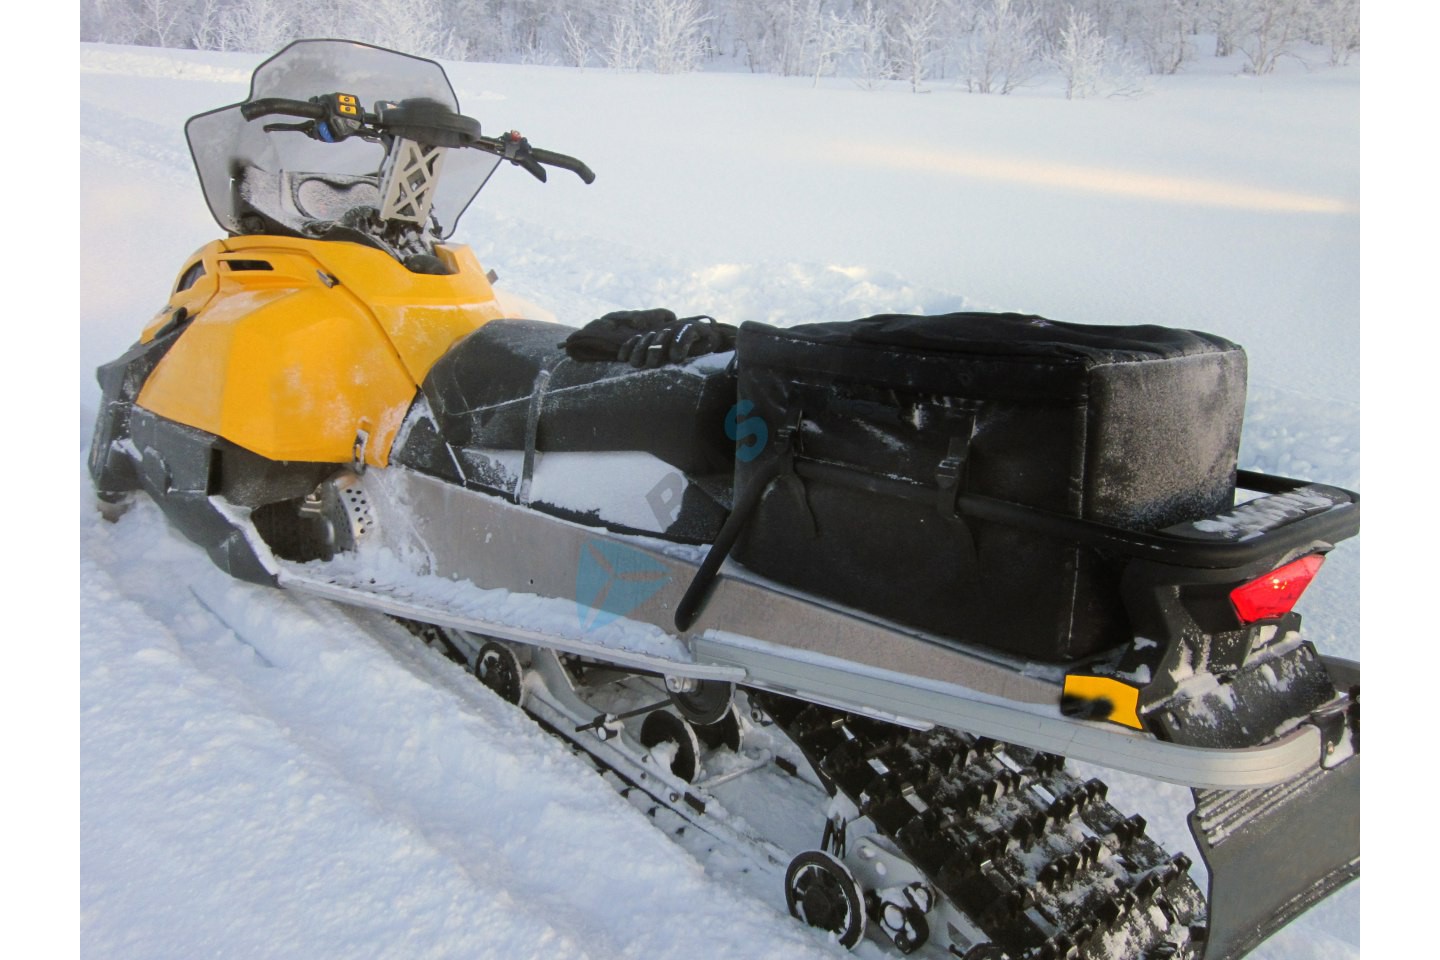 Ski-doo tundra wt550f - тест